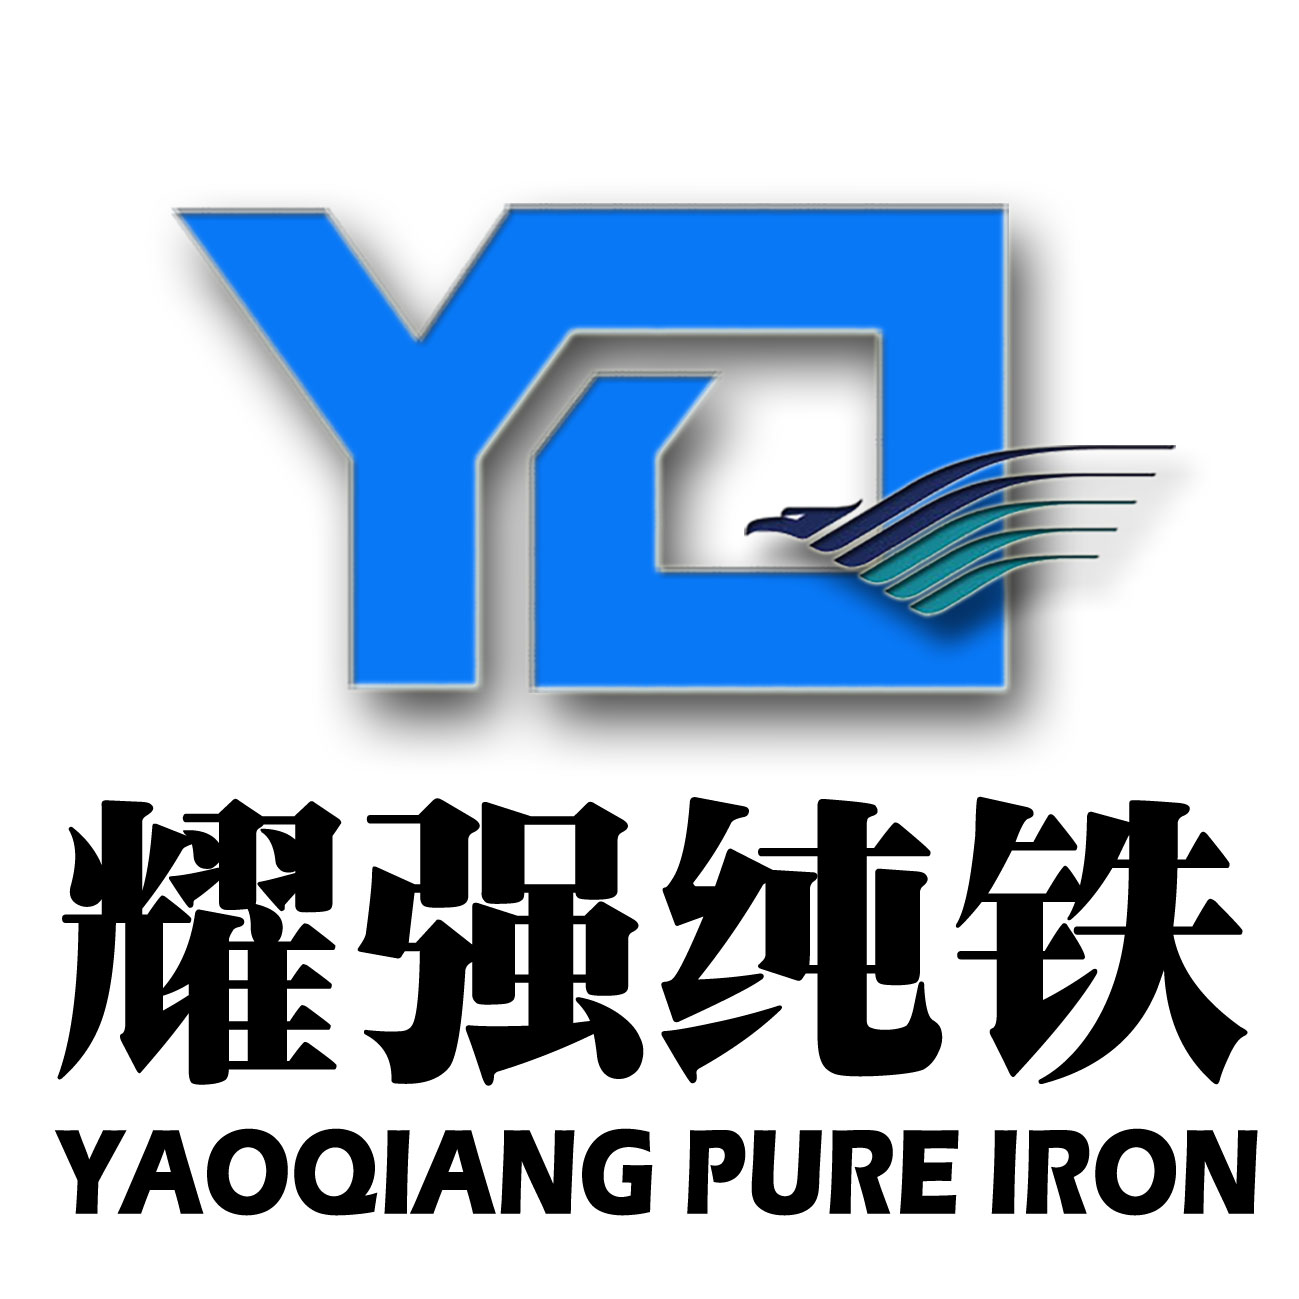 太钢炉料纯铁YT01，成份纯净无杂质含铁量99.99